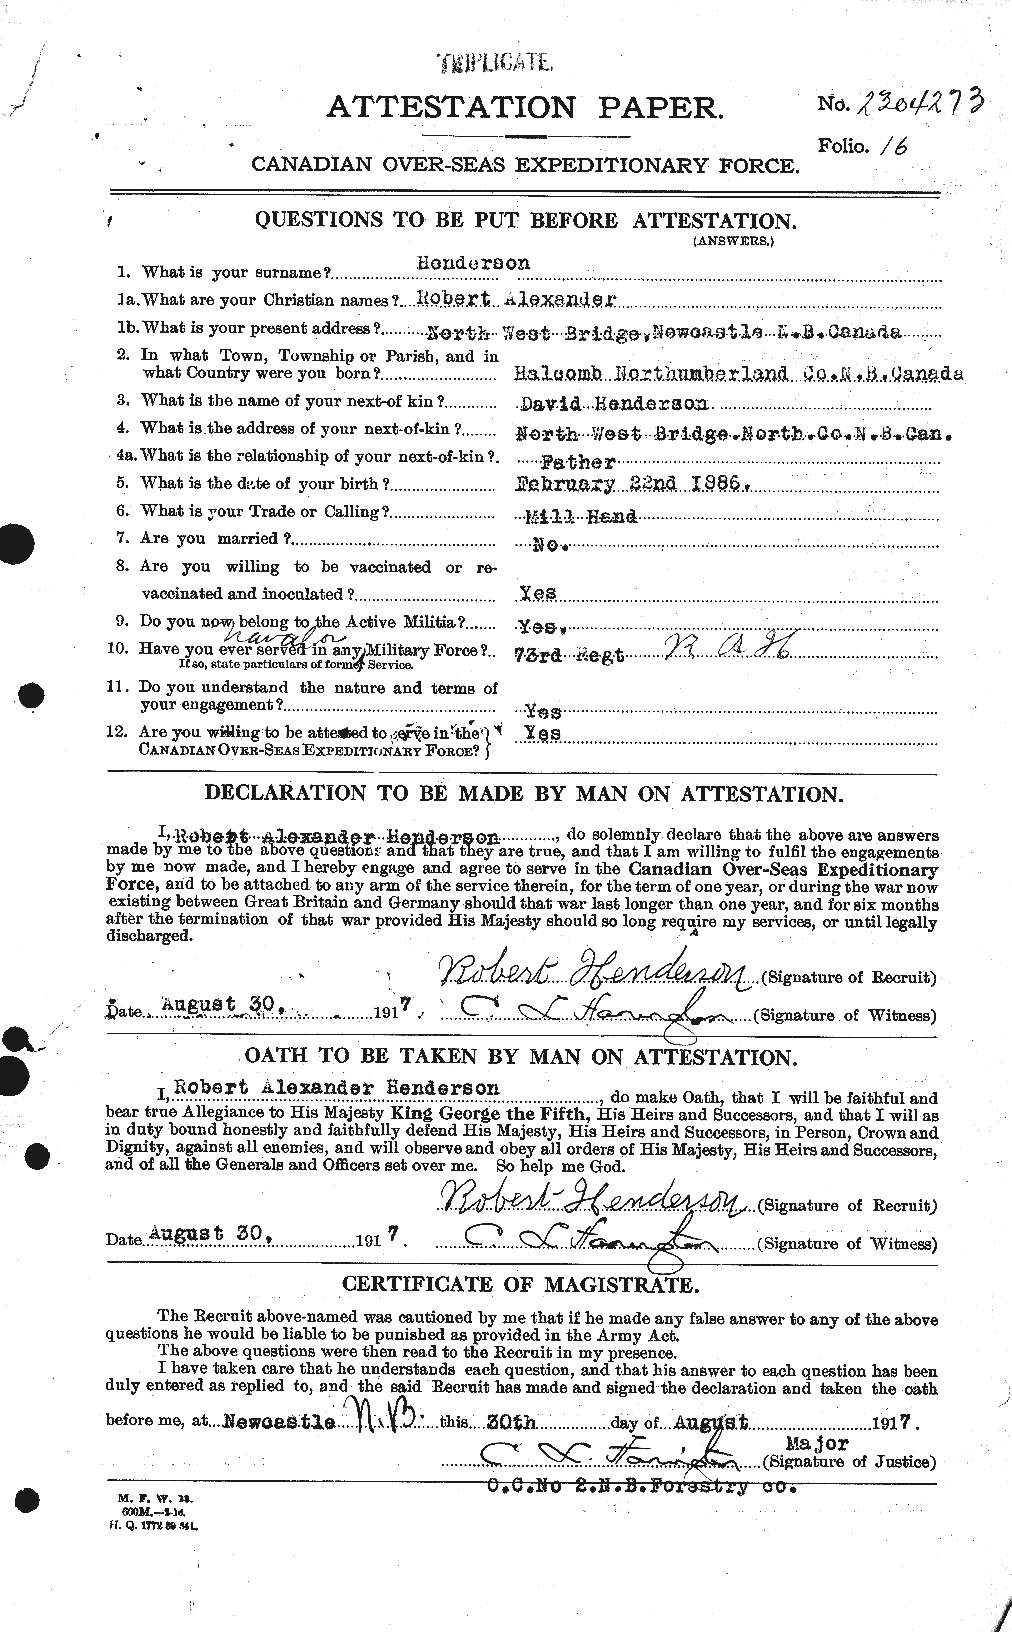 Dossiers du Personnel de la Première Guerre mondiale - CEC 387348a